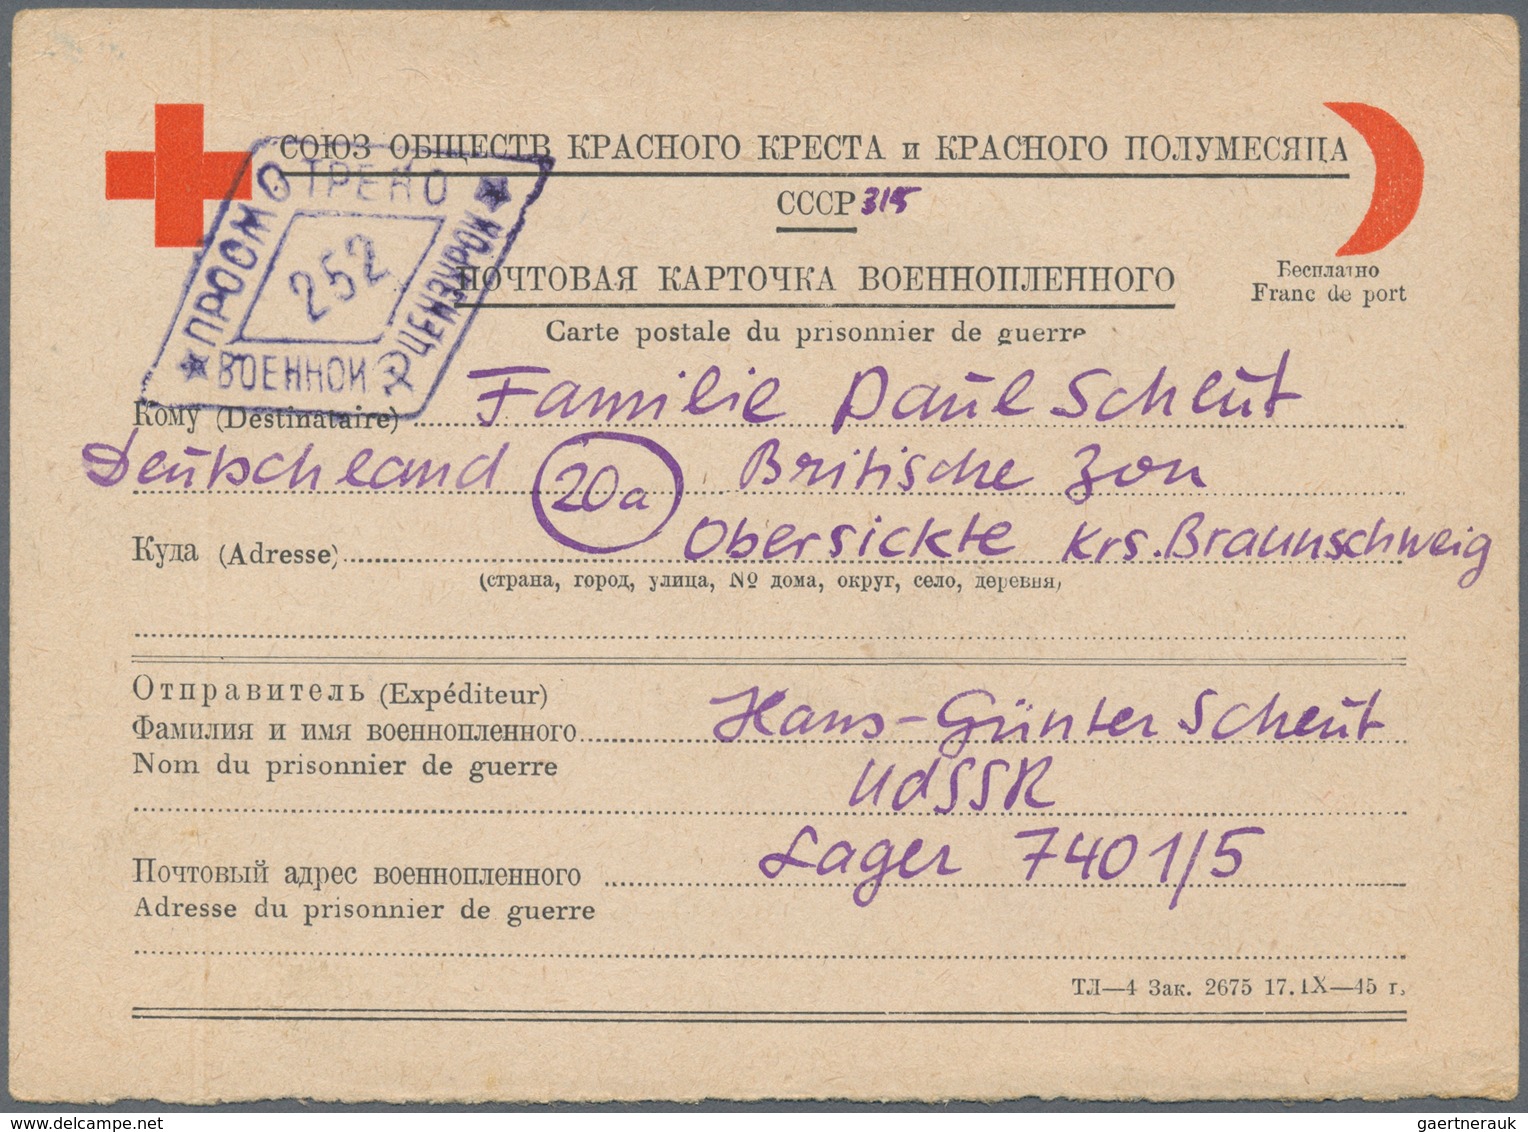 Kriegsgefangenen-Lagerpost: 1947/1949, zehn Karten (div. Vordrucke) eines dt. Kriegsgefangenen (Lage